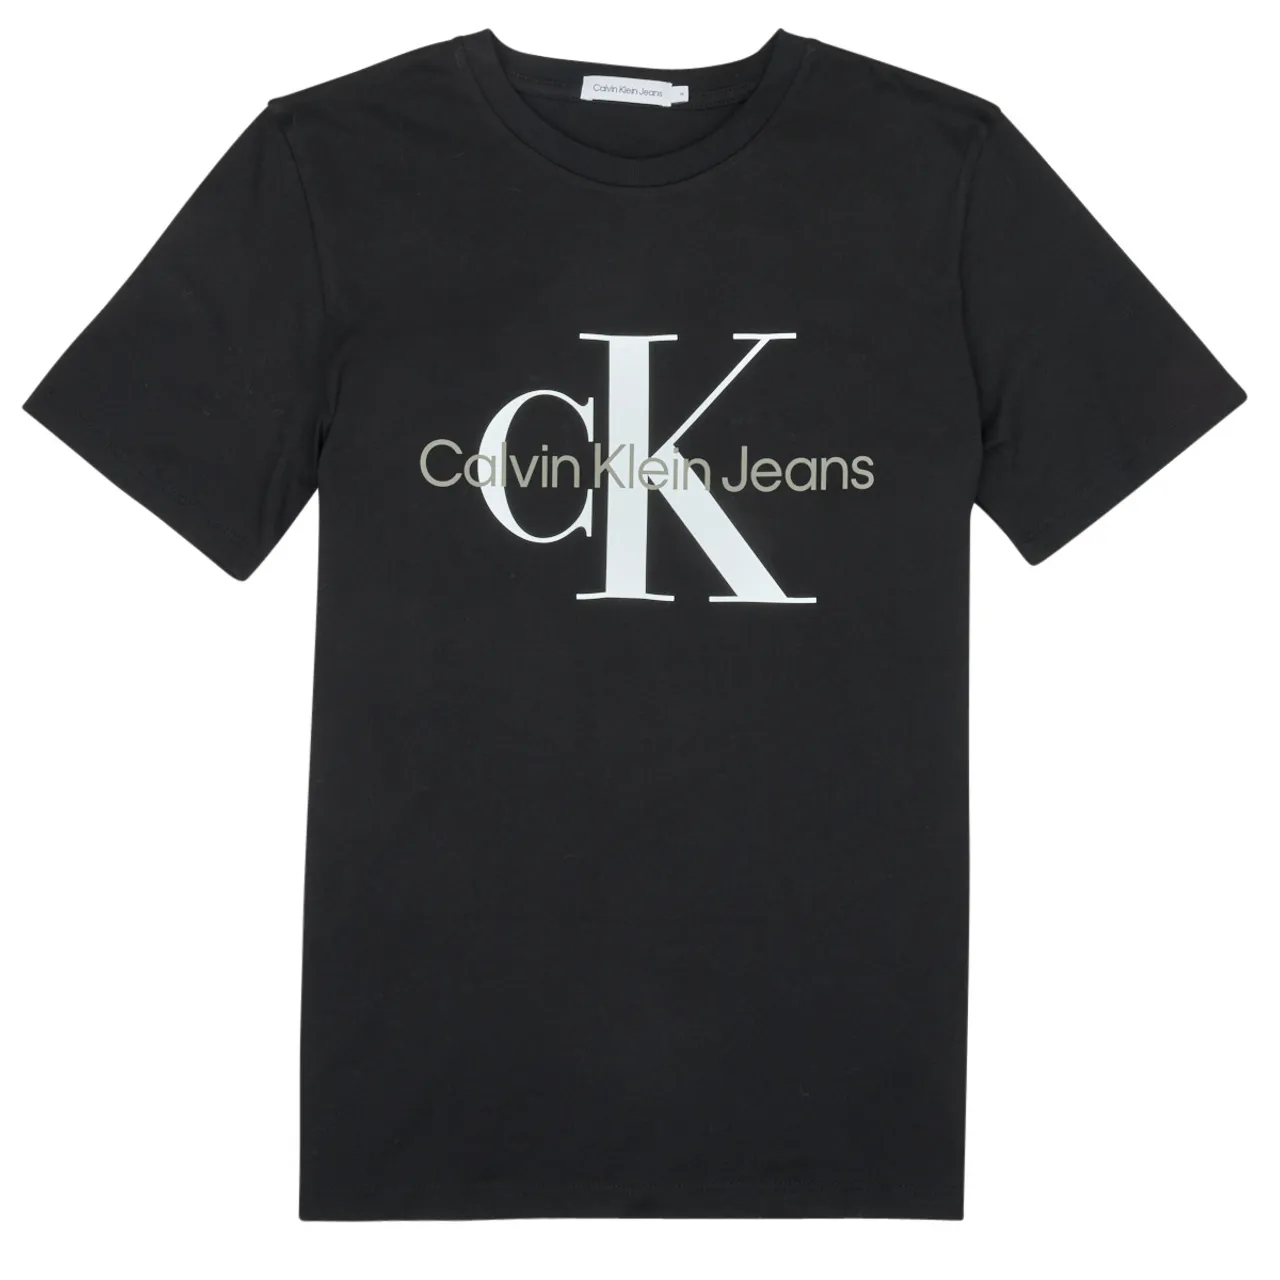 Calvin Klein Jeans  MONOGRAM LOGO T-SHIRT  boys's Children's T shirt in Black